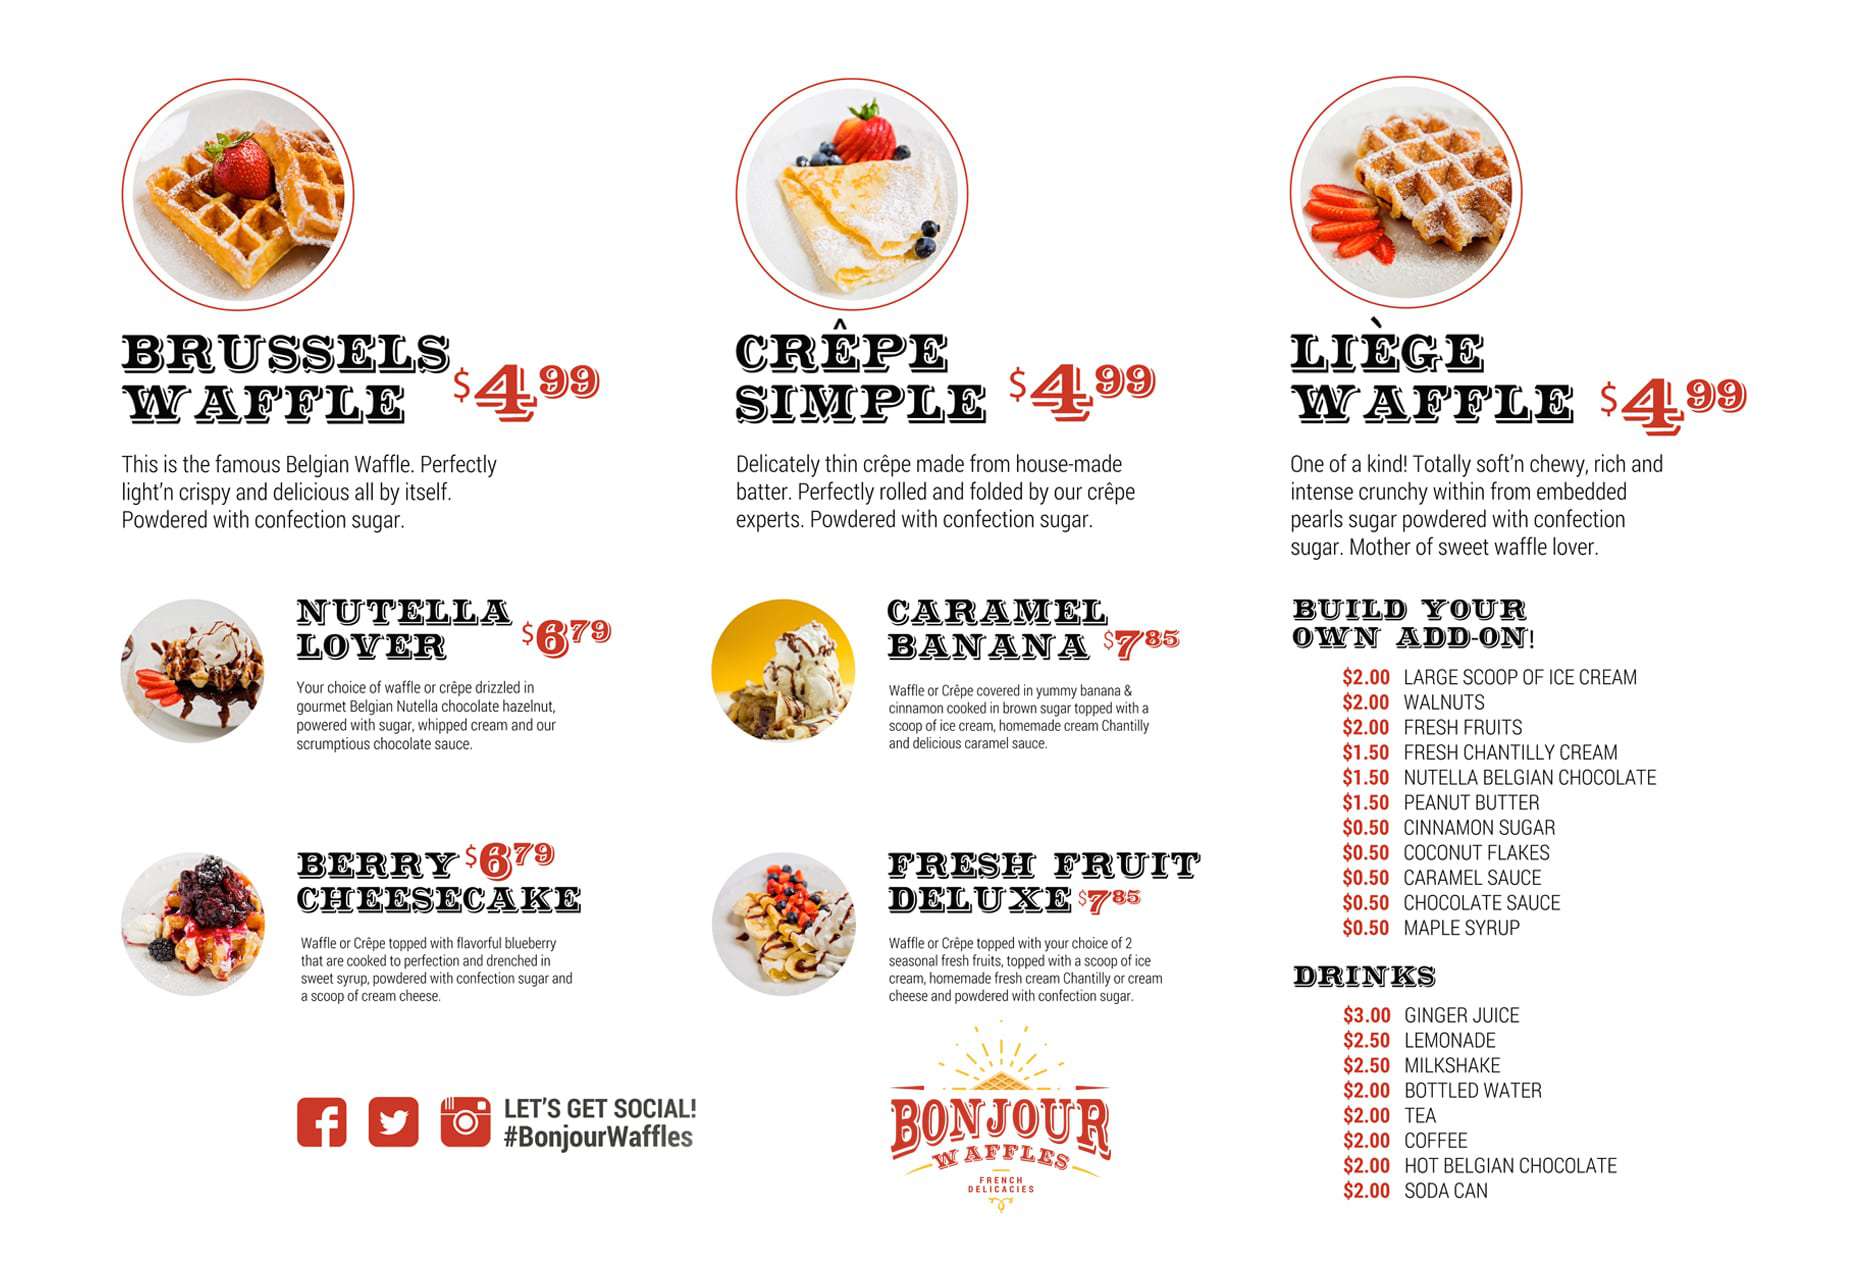 waffle love liberty hill food truck menu